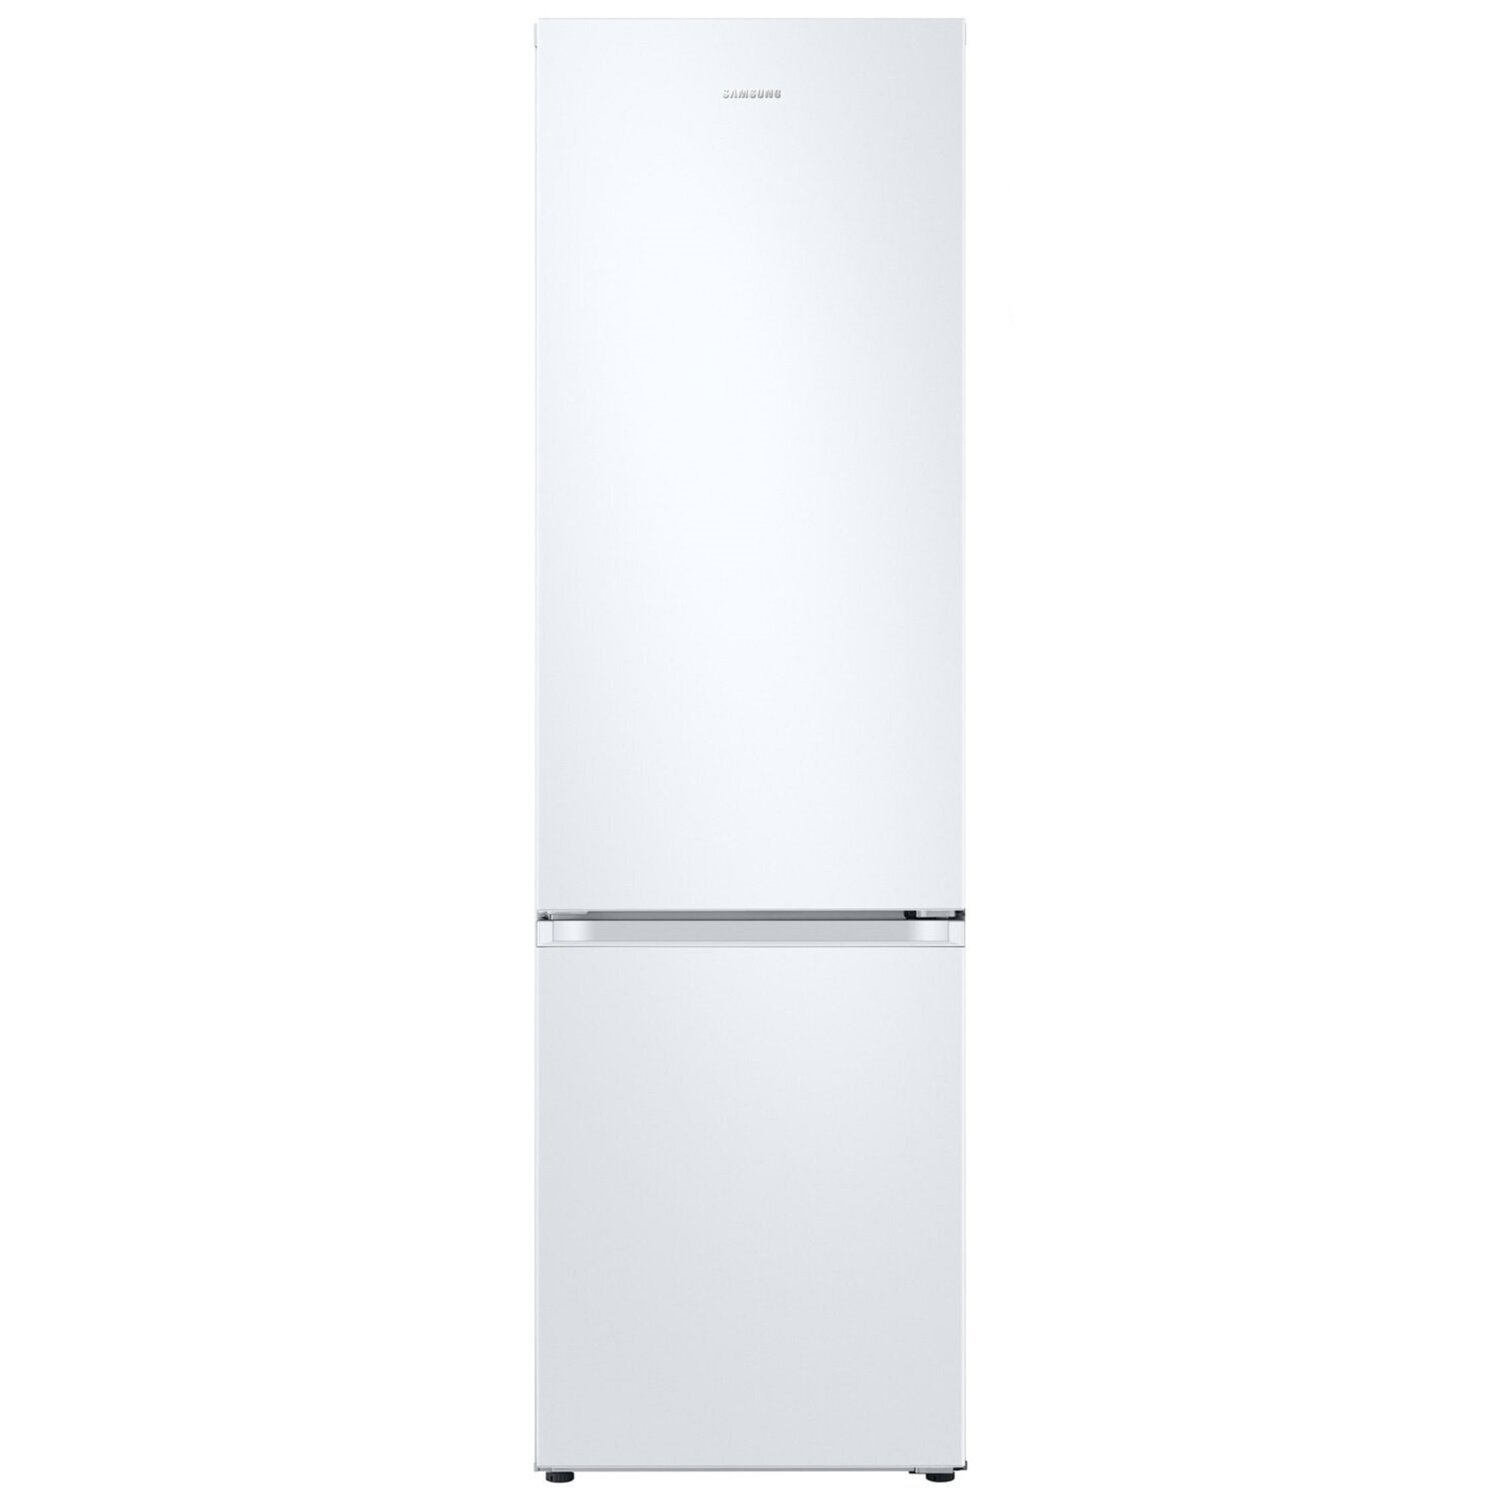 Холодильники Samsung с технологией No Frost